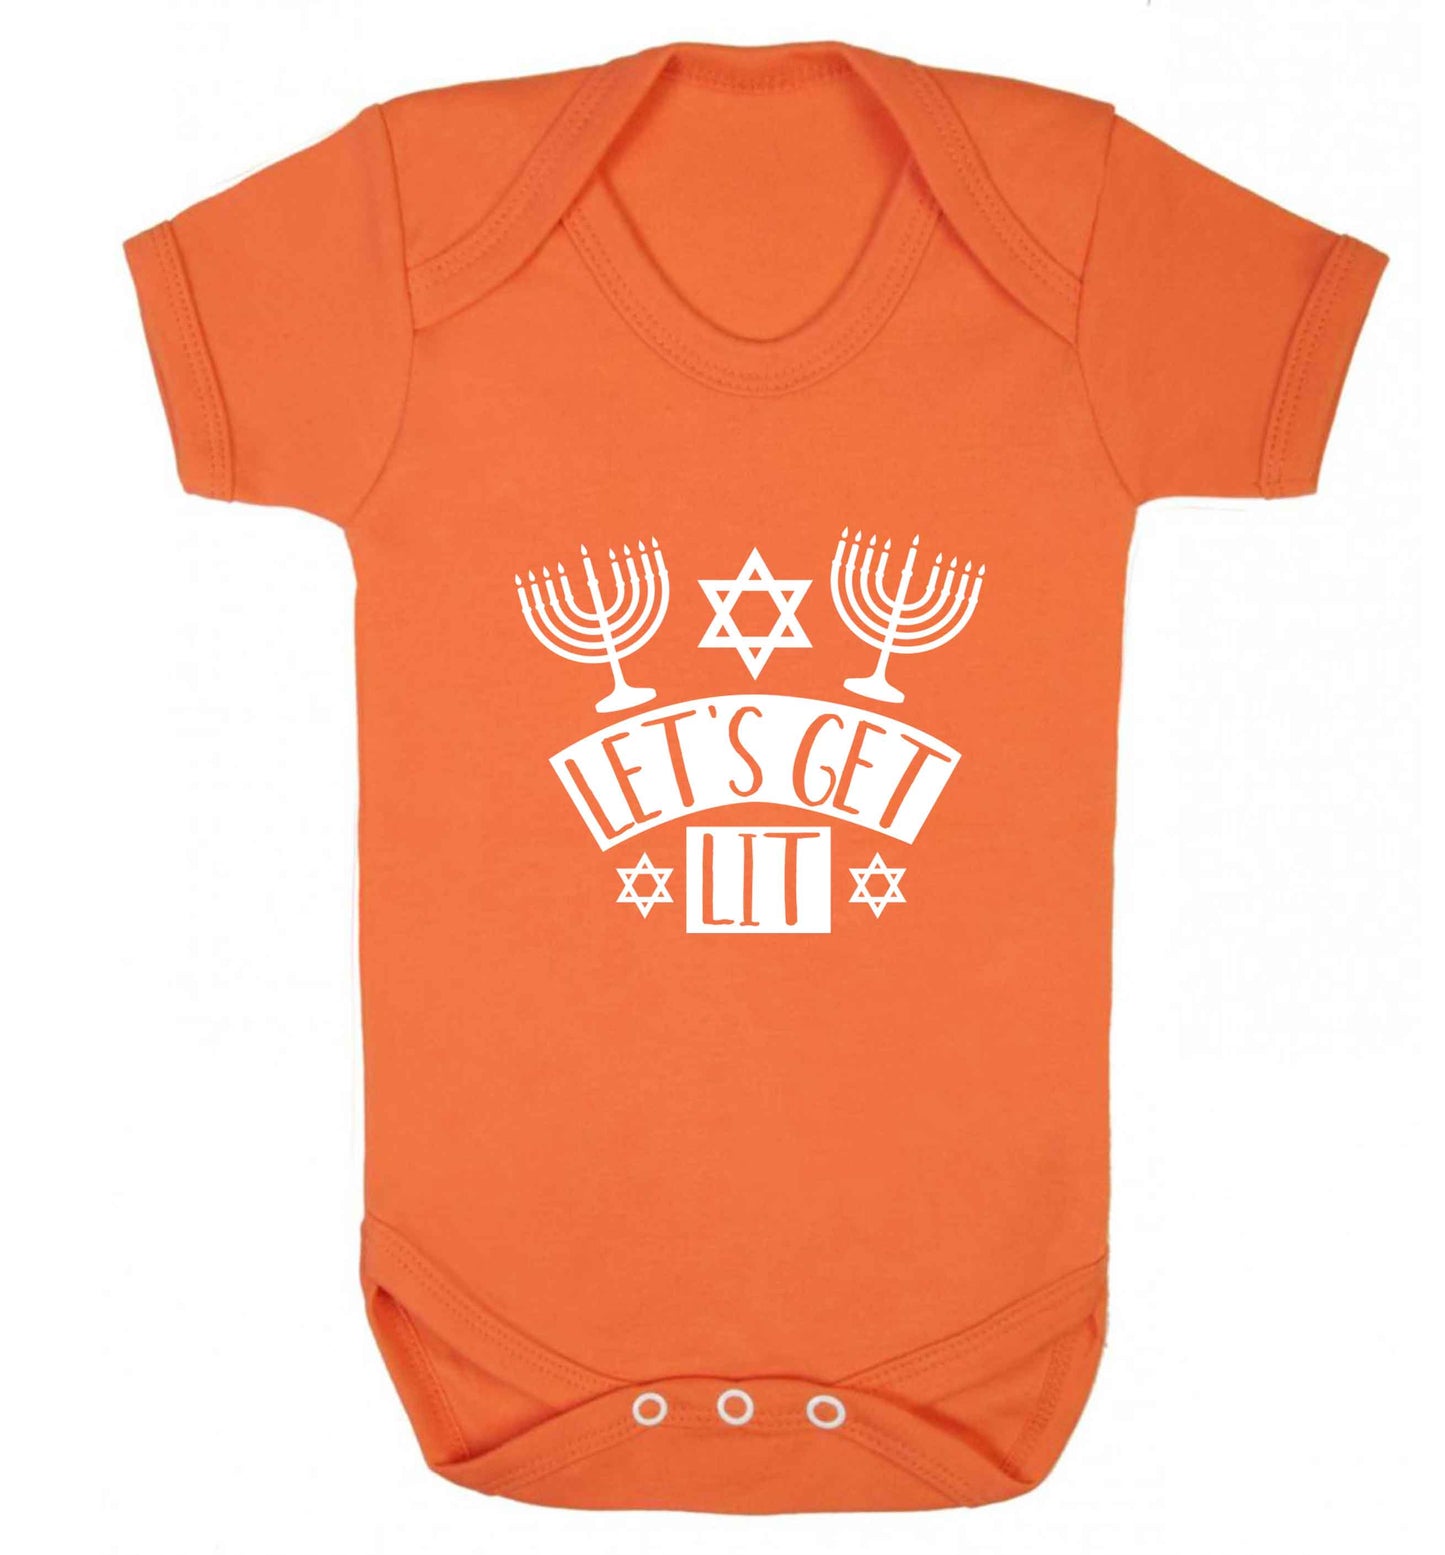 Let's get lit baby vest orange 18-24 months